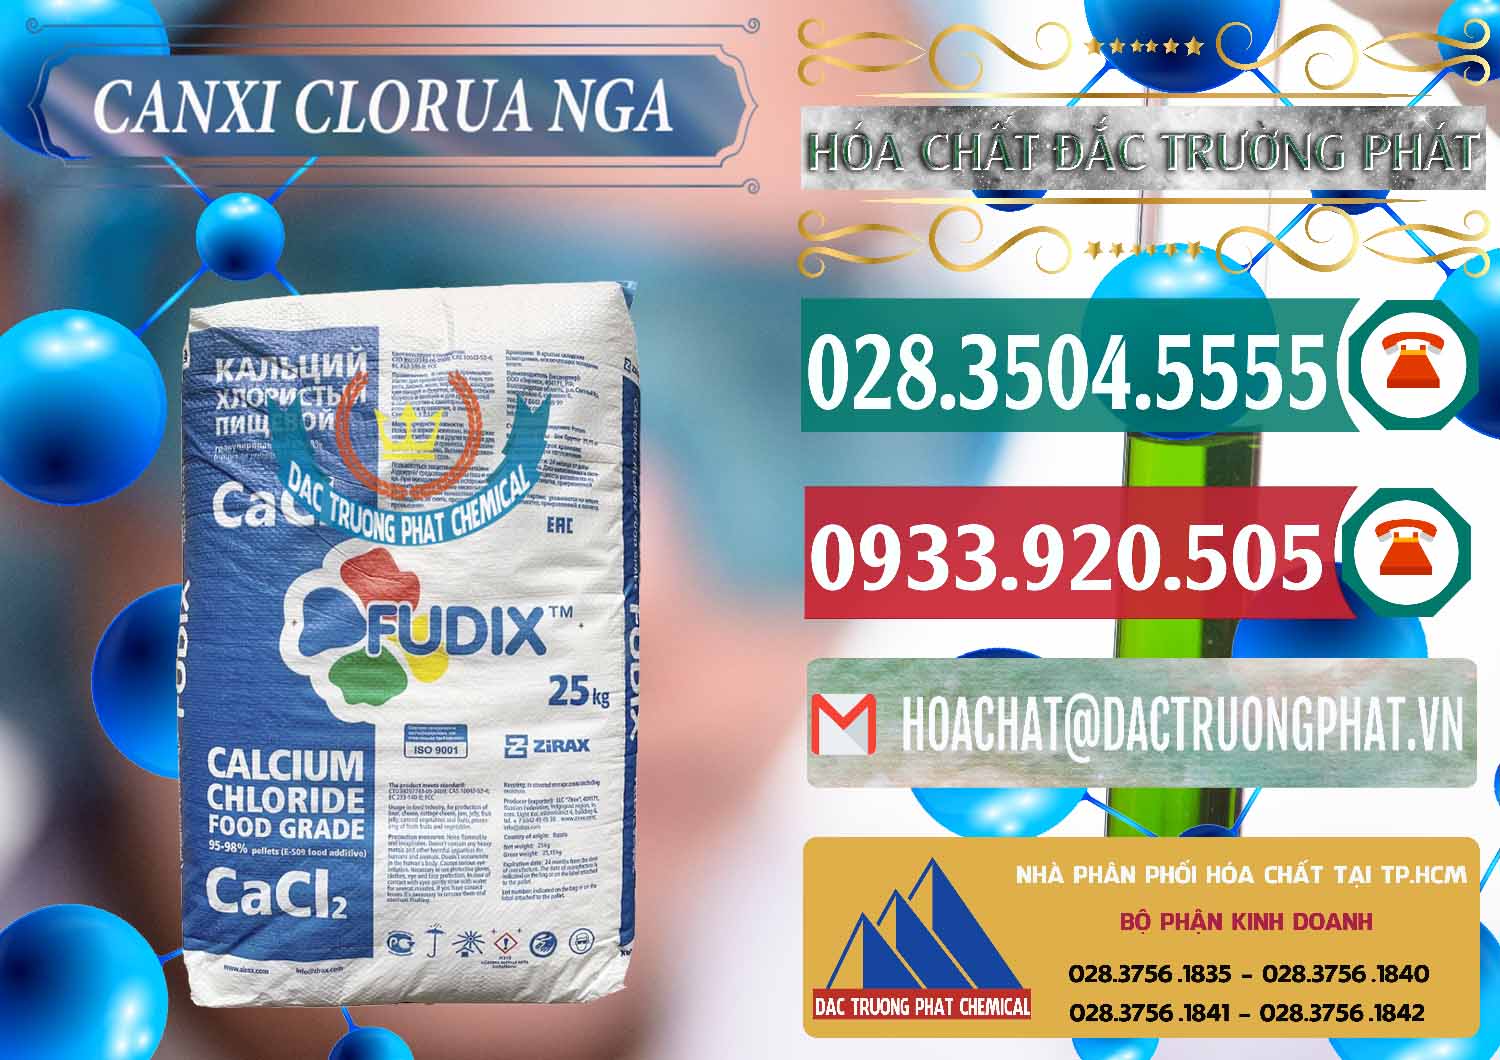 Cty bán và cung cấp CaCl2 – Canxi Clorua Nga Russia - 0430 - Công ty chuyên bán _ phân phối hóa chất tại TP.HCM - muabanhoachat.vn